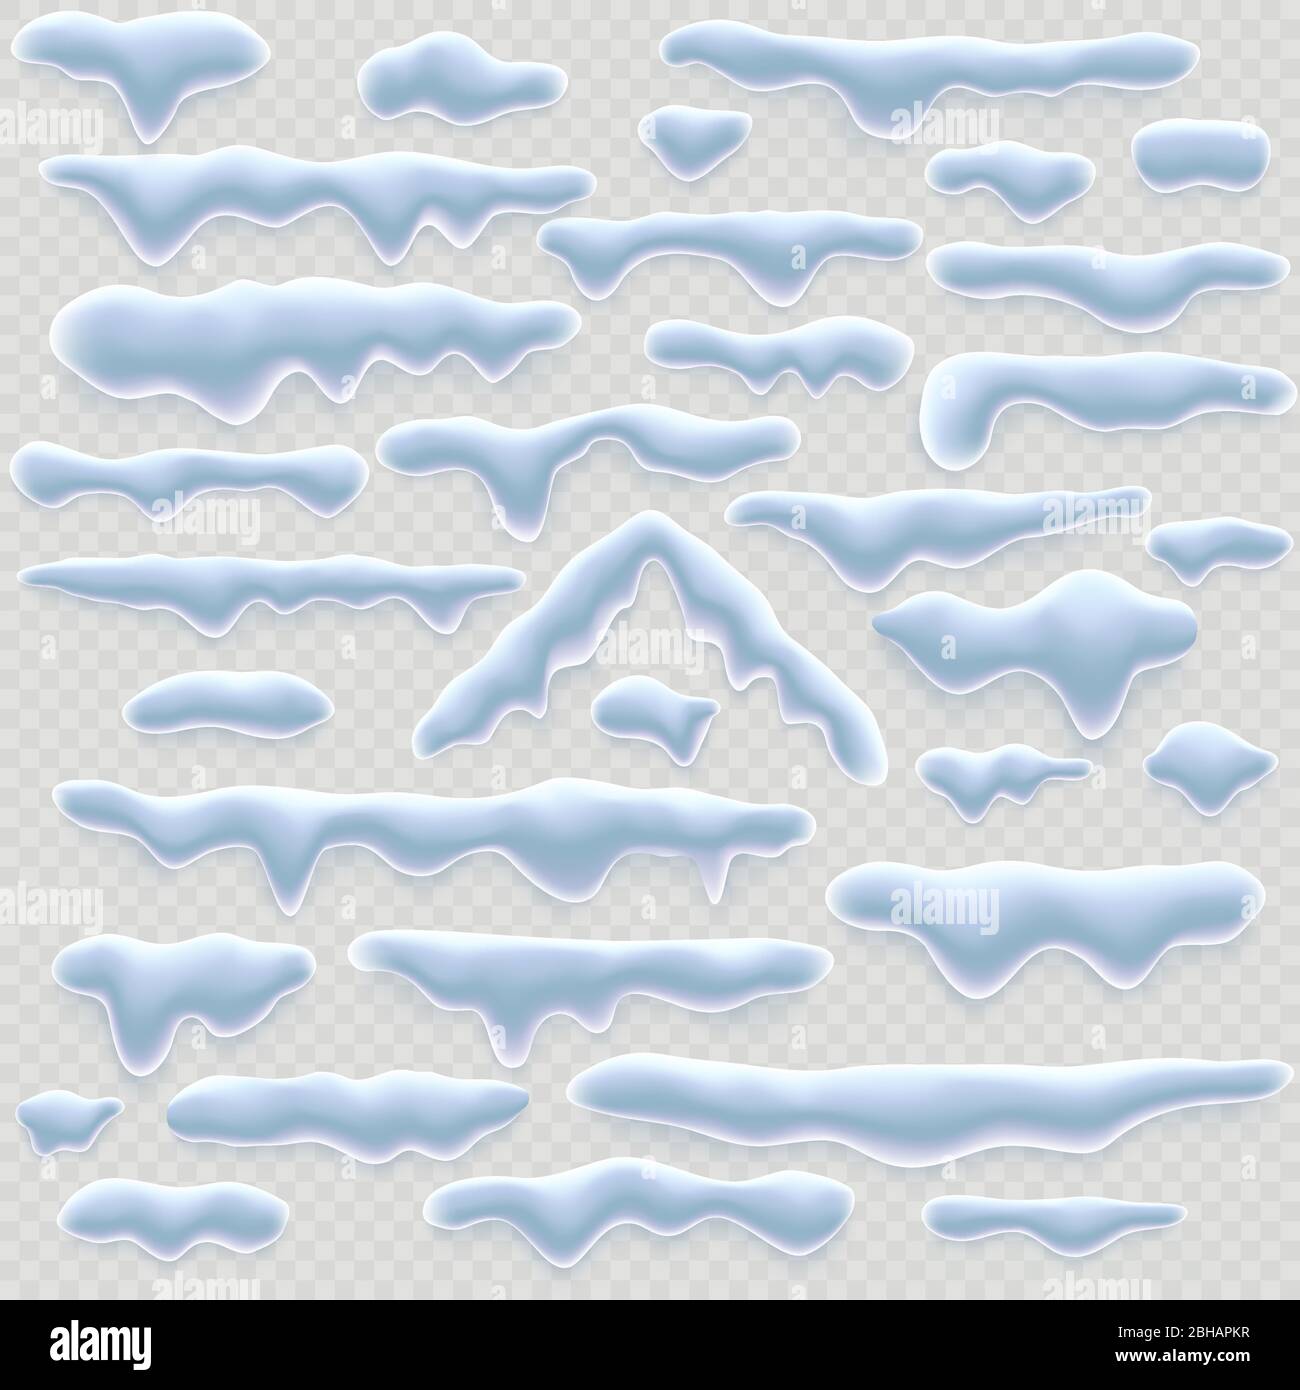 Set von Schneemützen, Eiszapfen und Schneeverwehungen auf transparentem Hintergrund isoliert. Winterdeko. Elemente für Computerspiele, Weihnachtskarten Stock Vektor